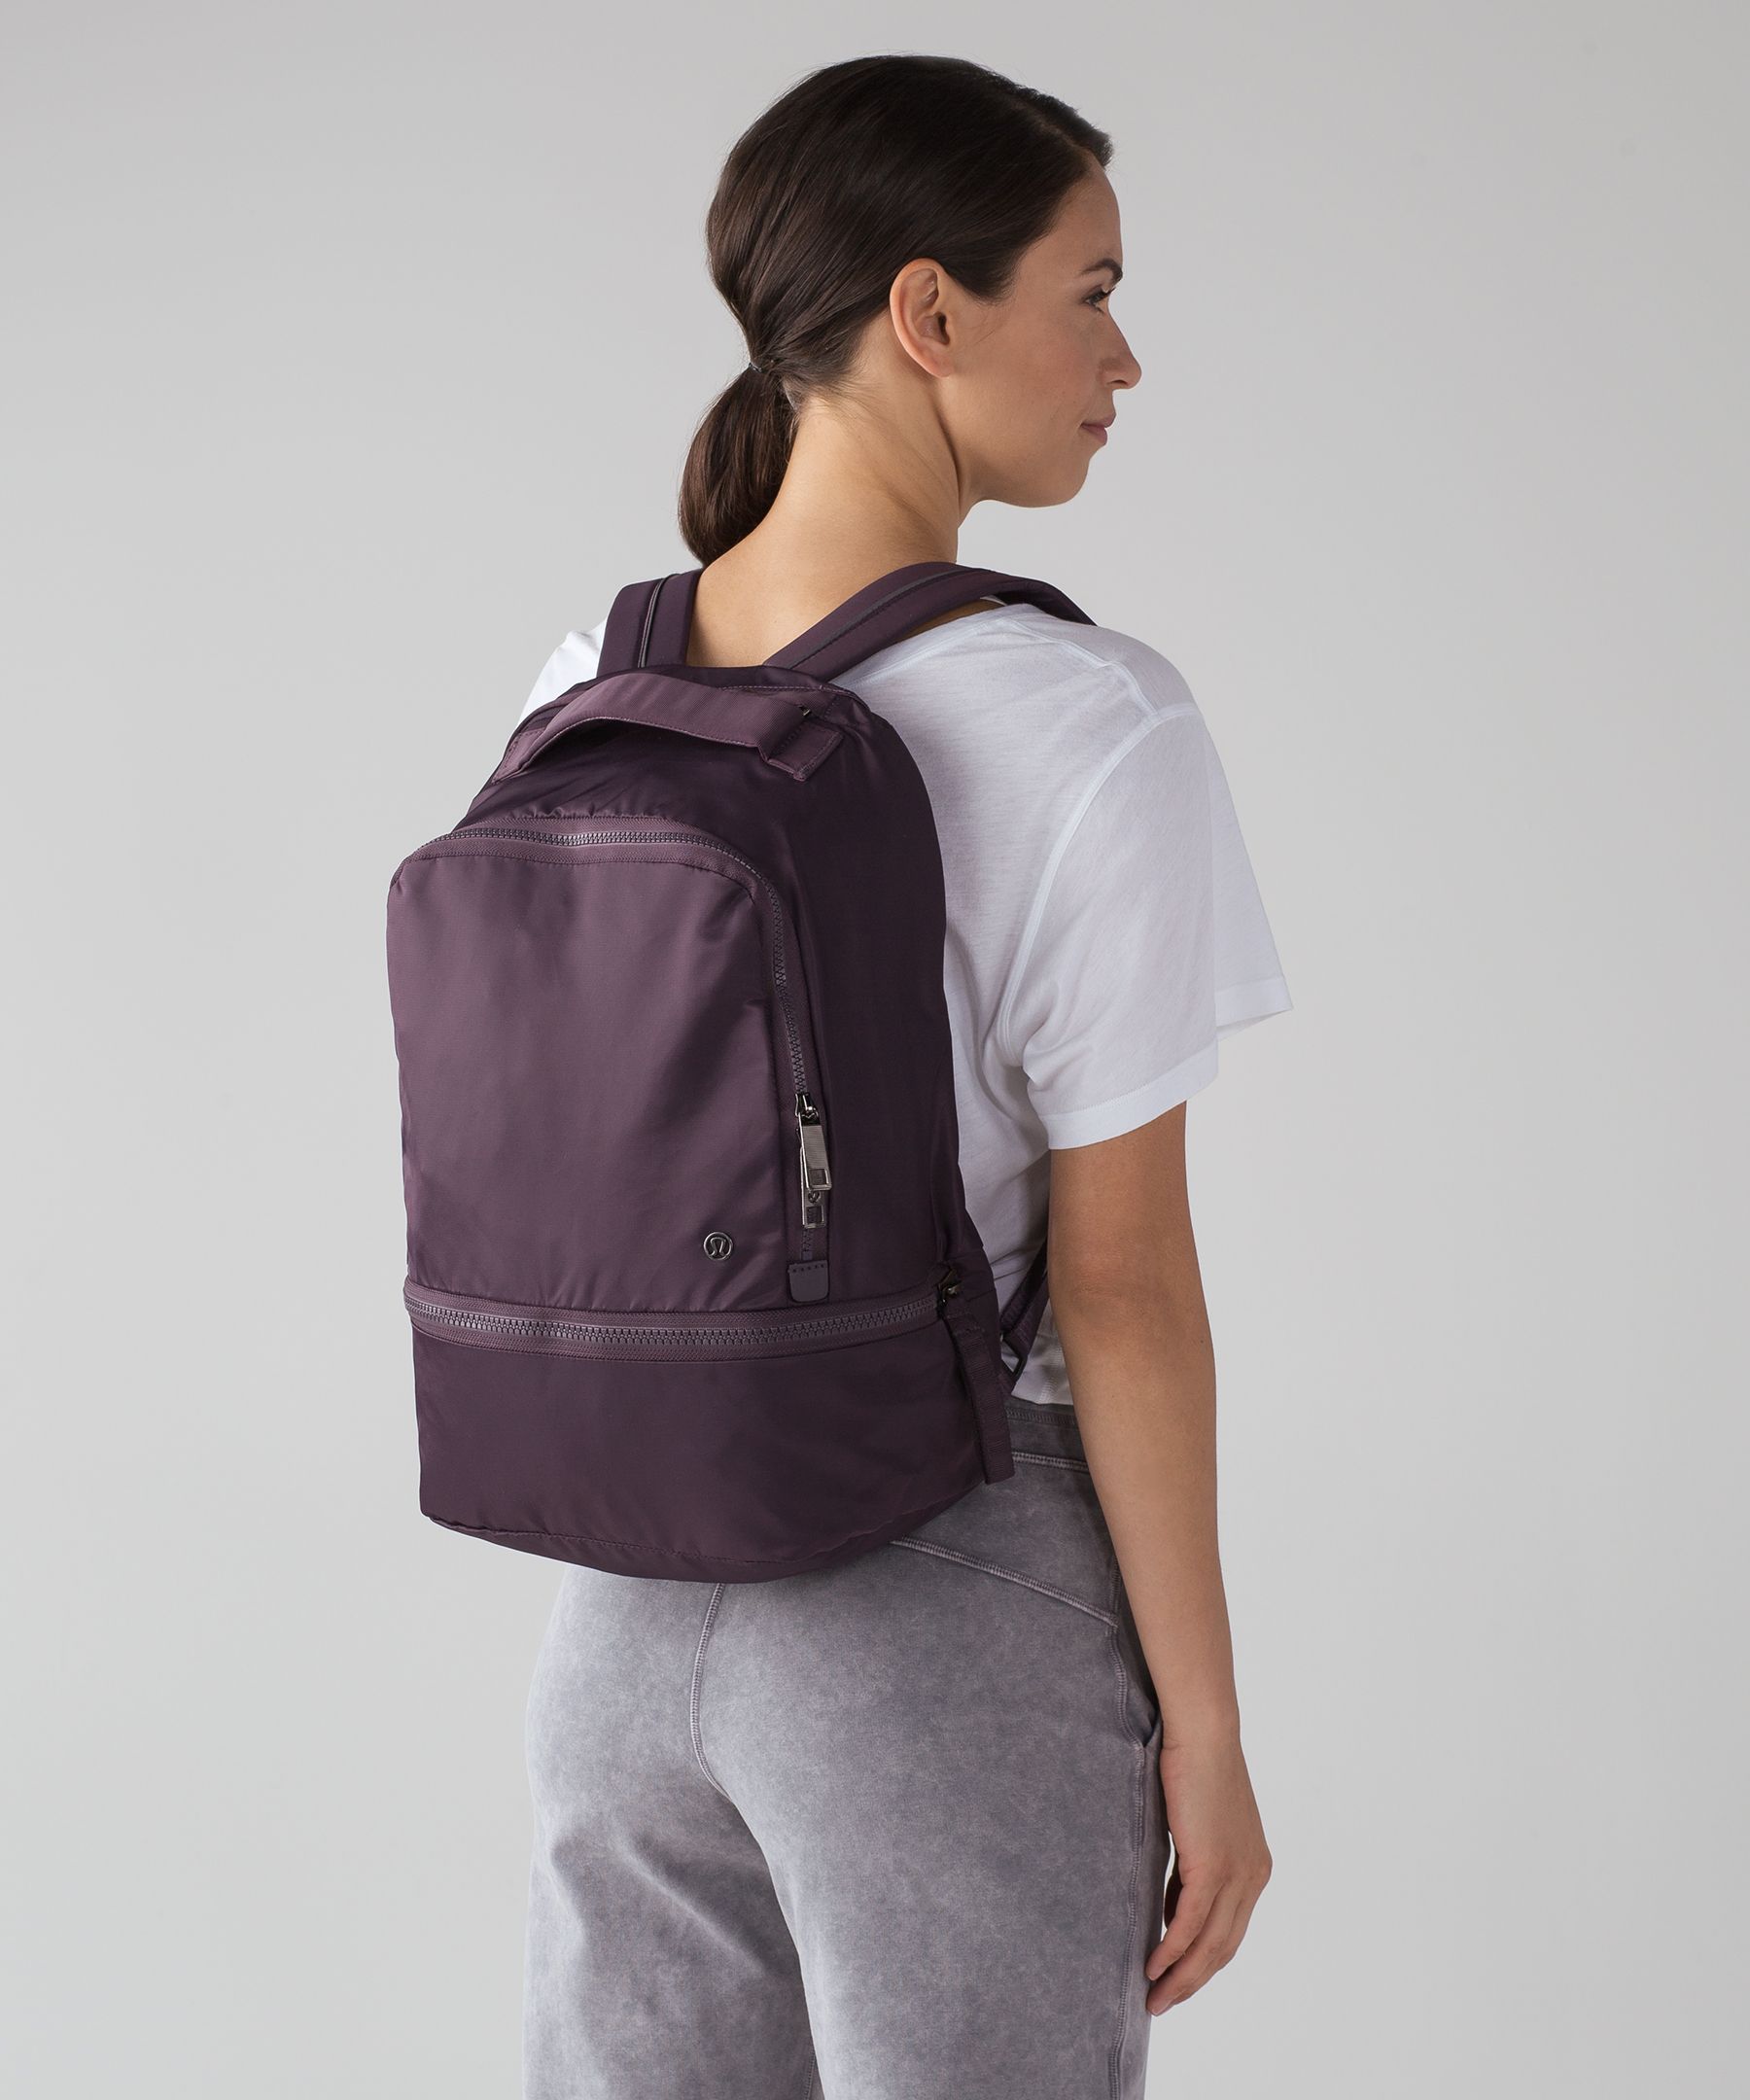 lululemon backpack diaper bag